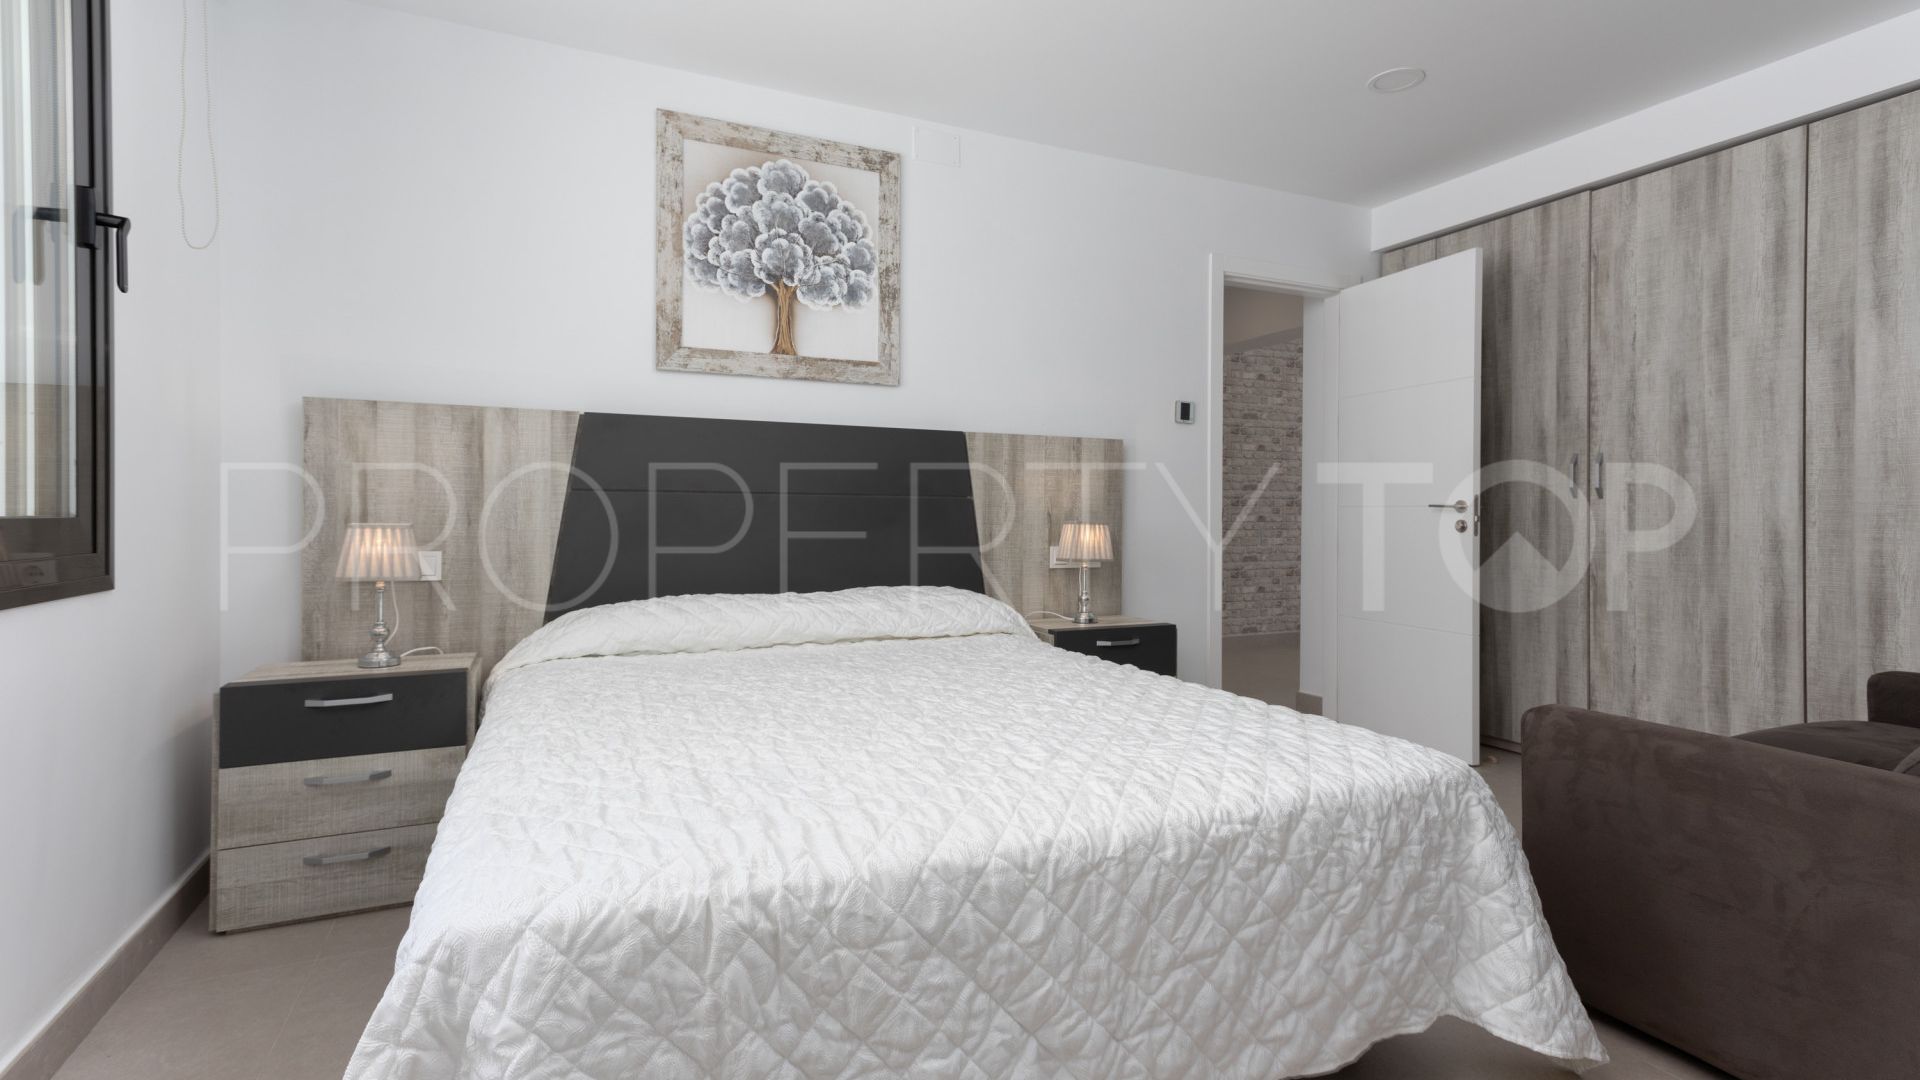 4 bedrooms Artola villa for sale